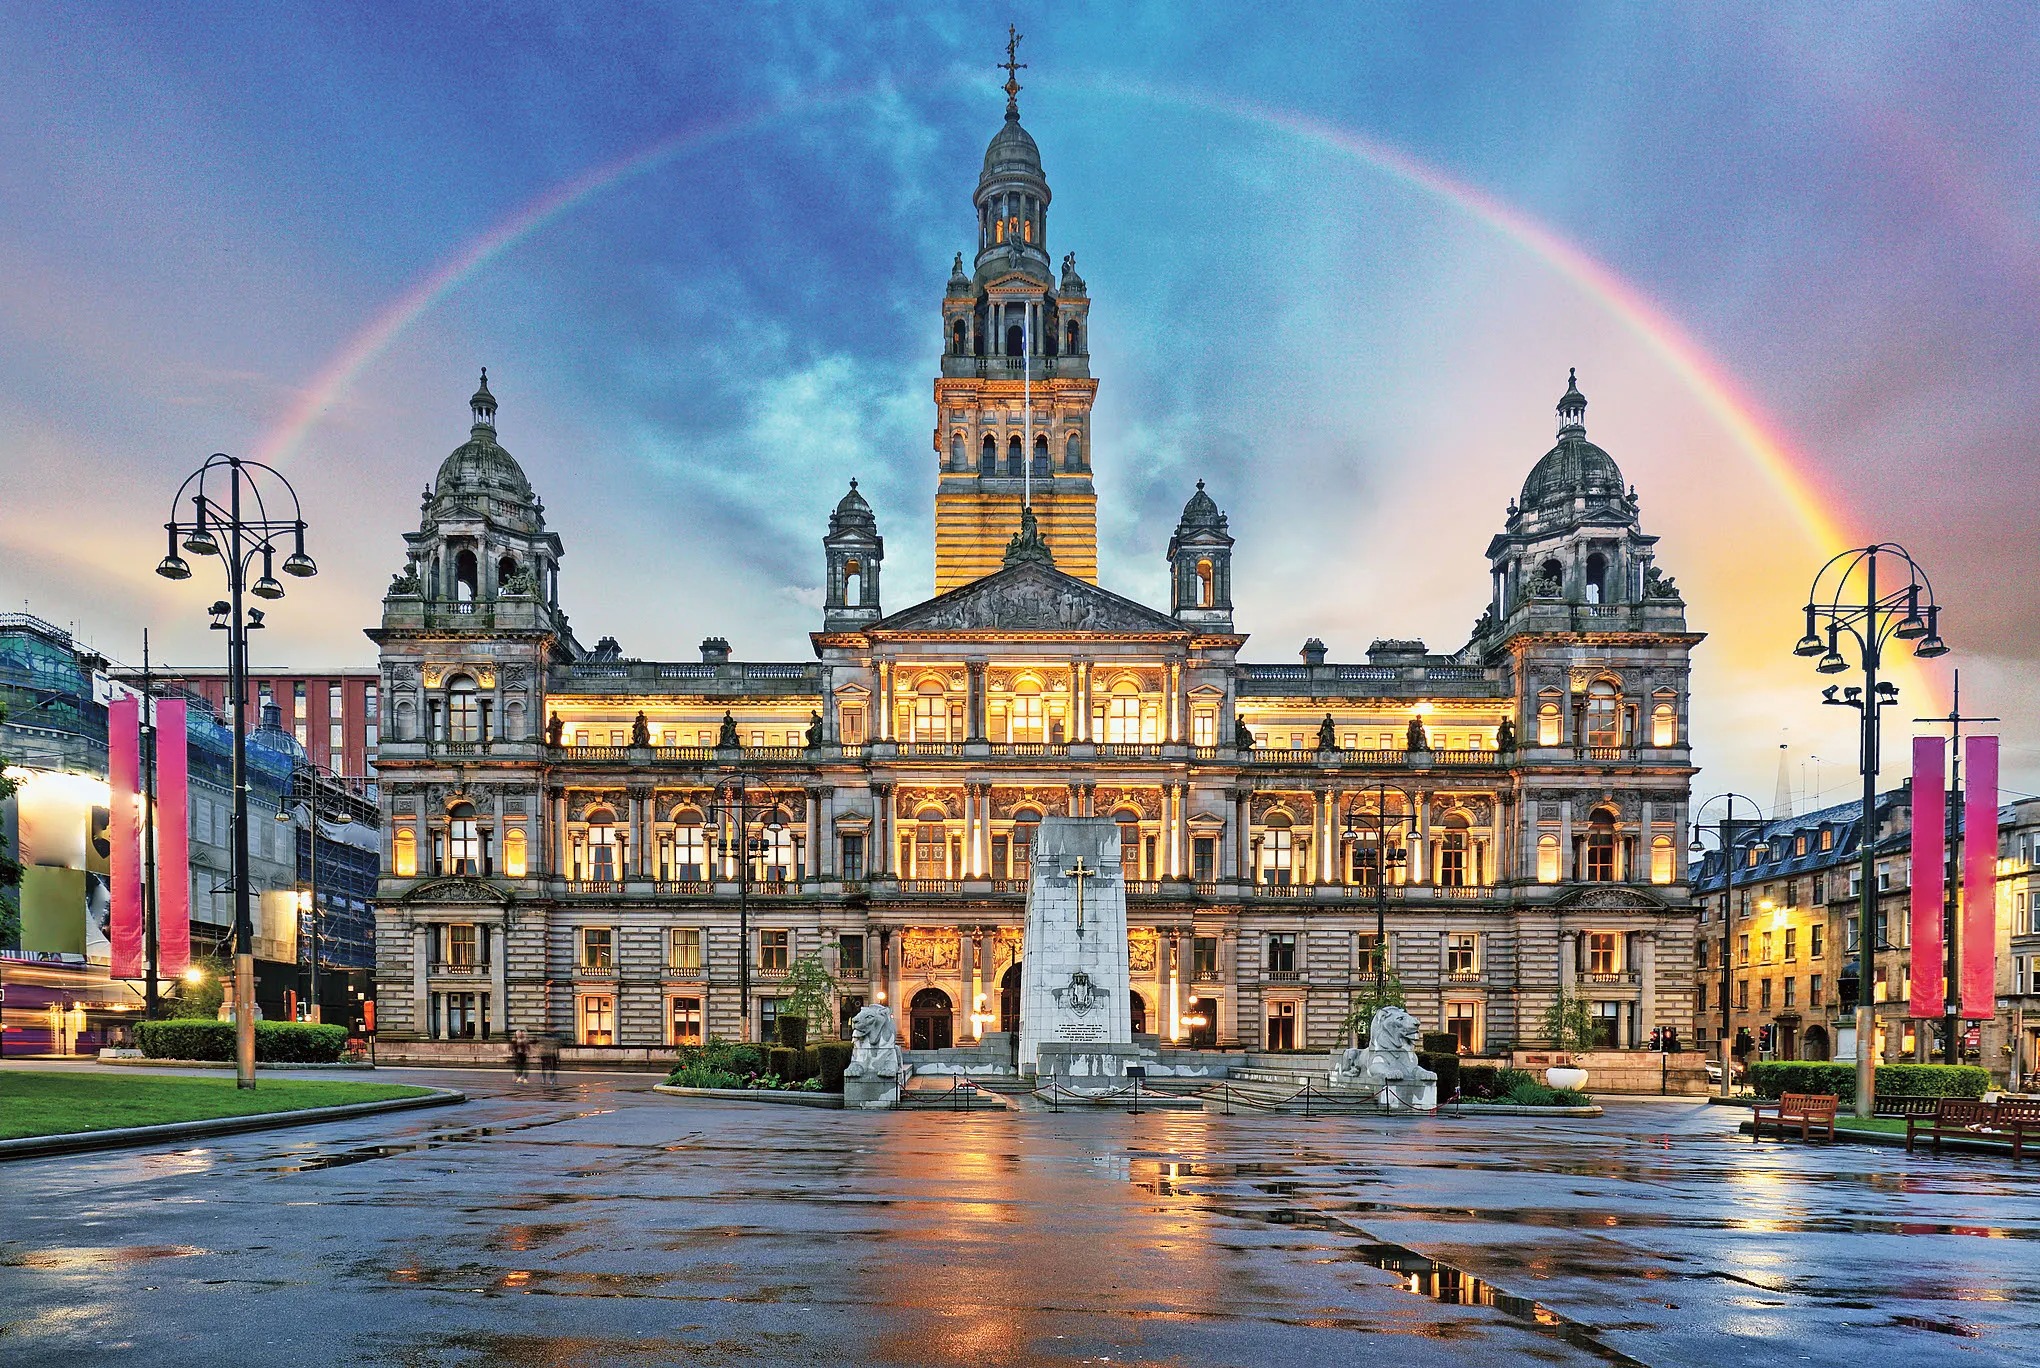 Regenbogen über Glasgow City Chambers und George Square